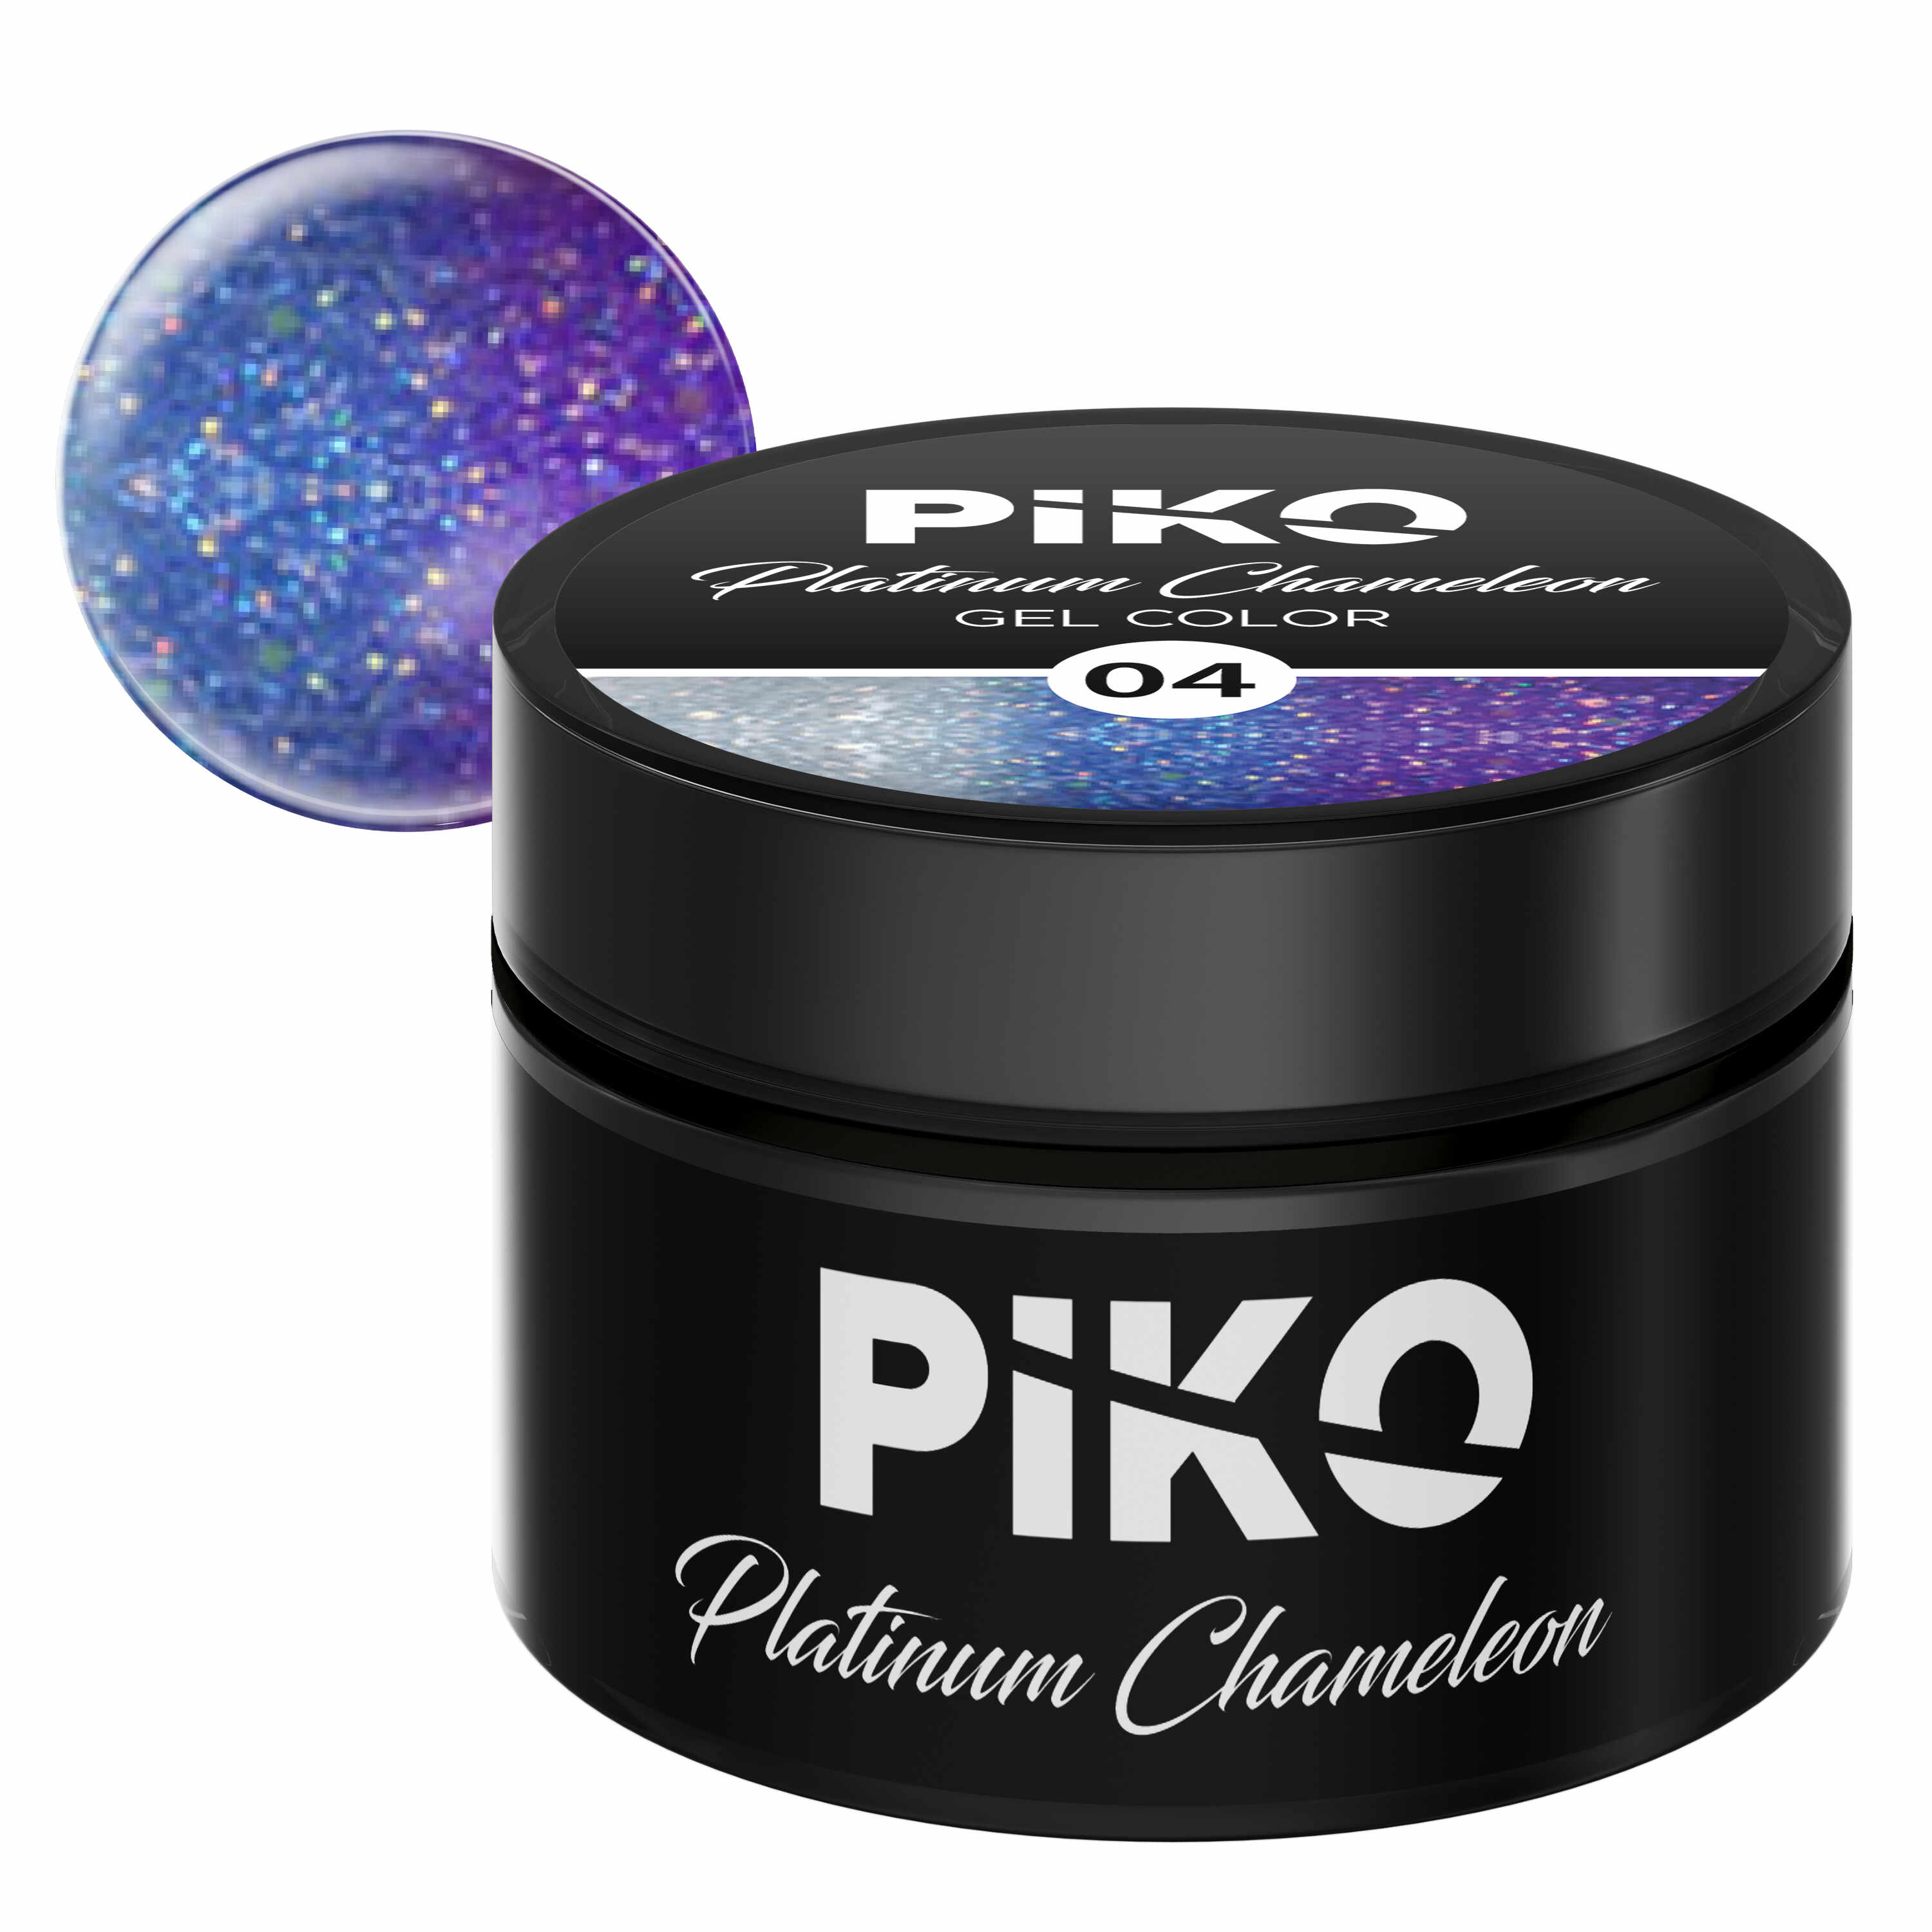 Gel color Piko, Platinum Chameleon, 5g, model 04